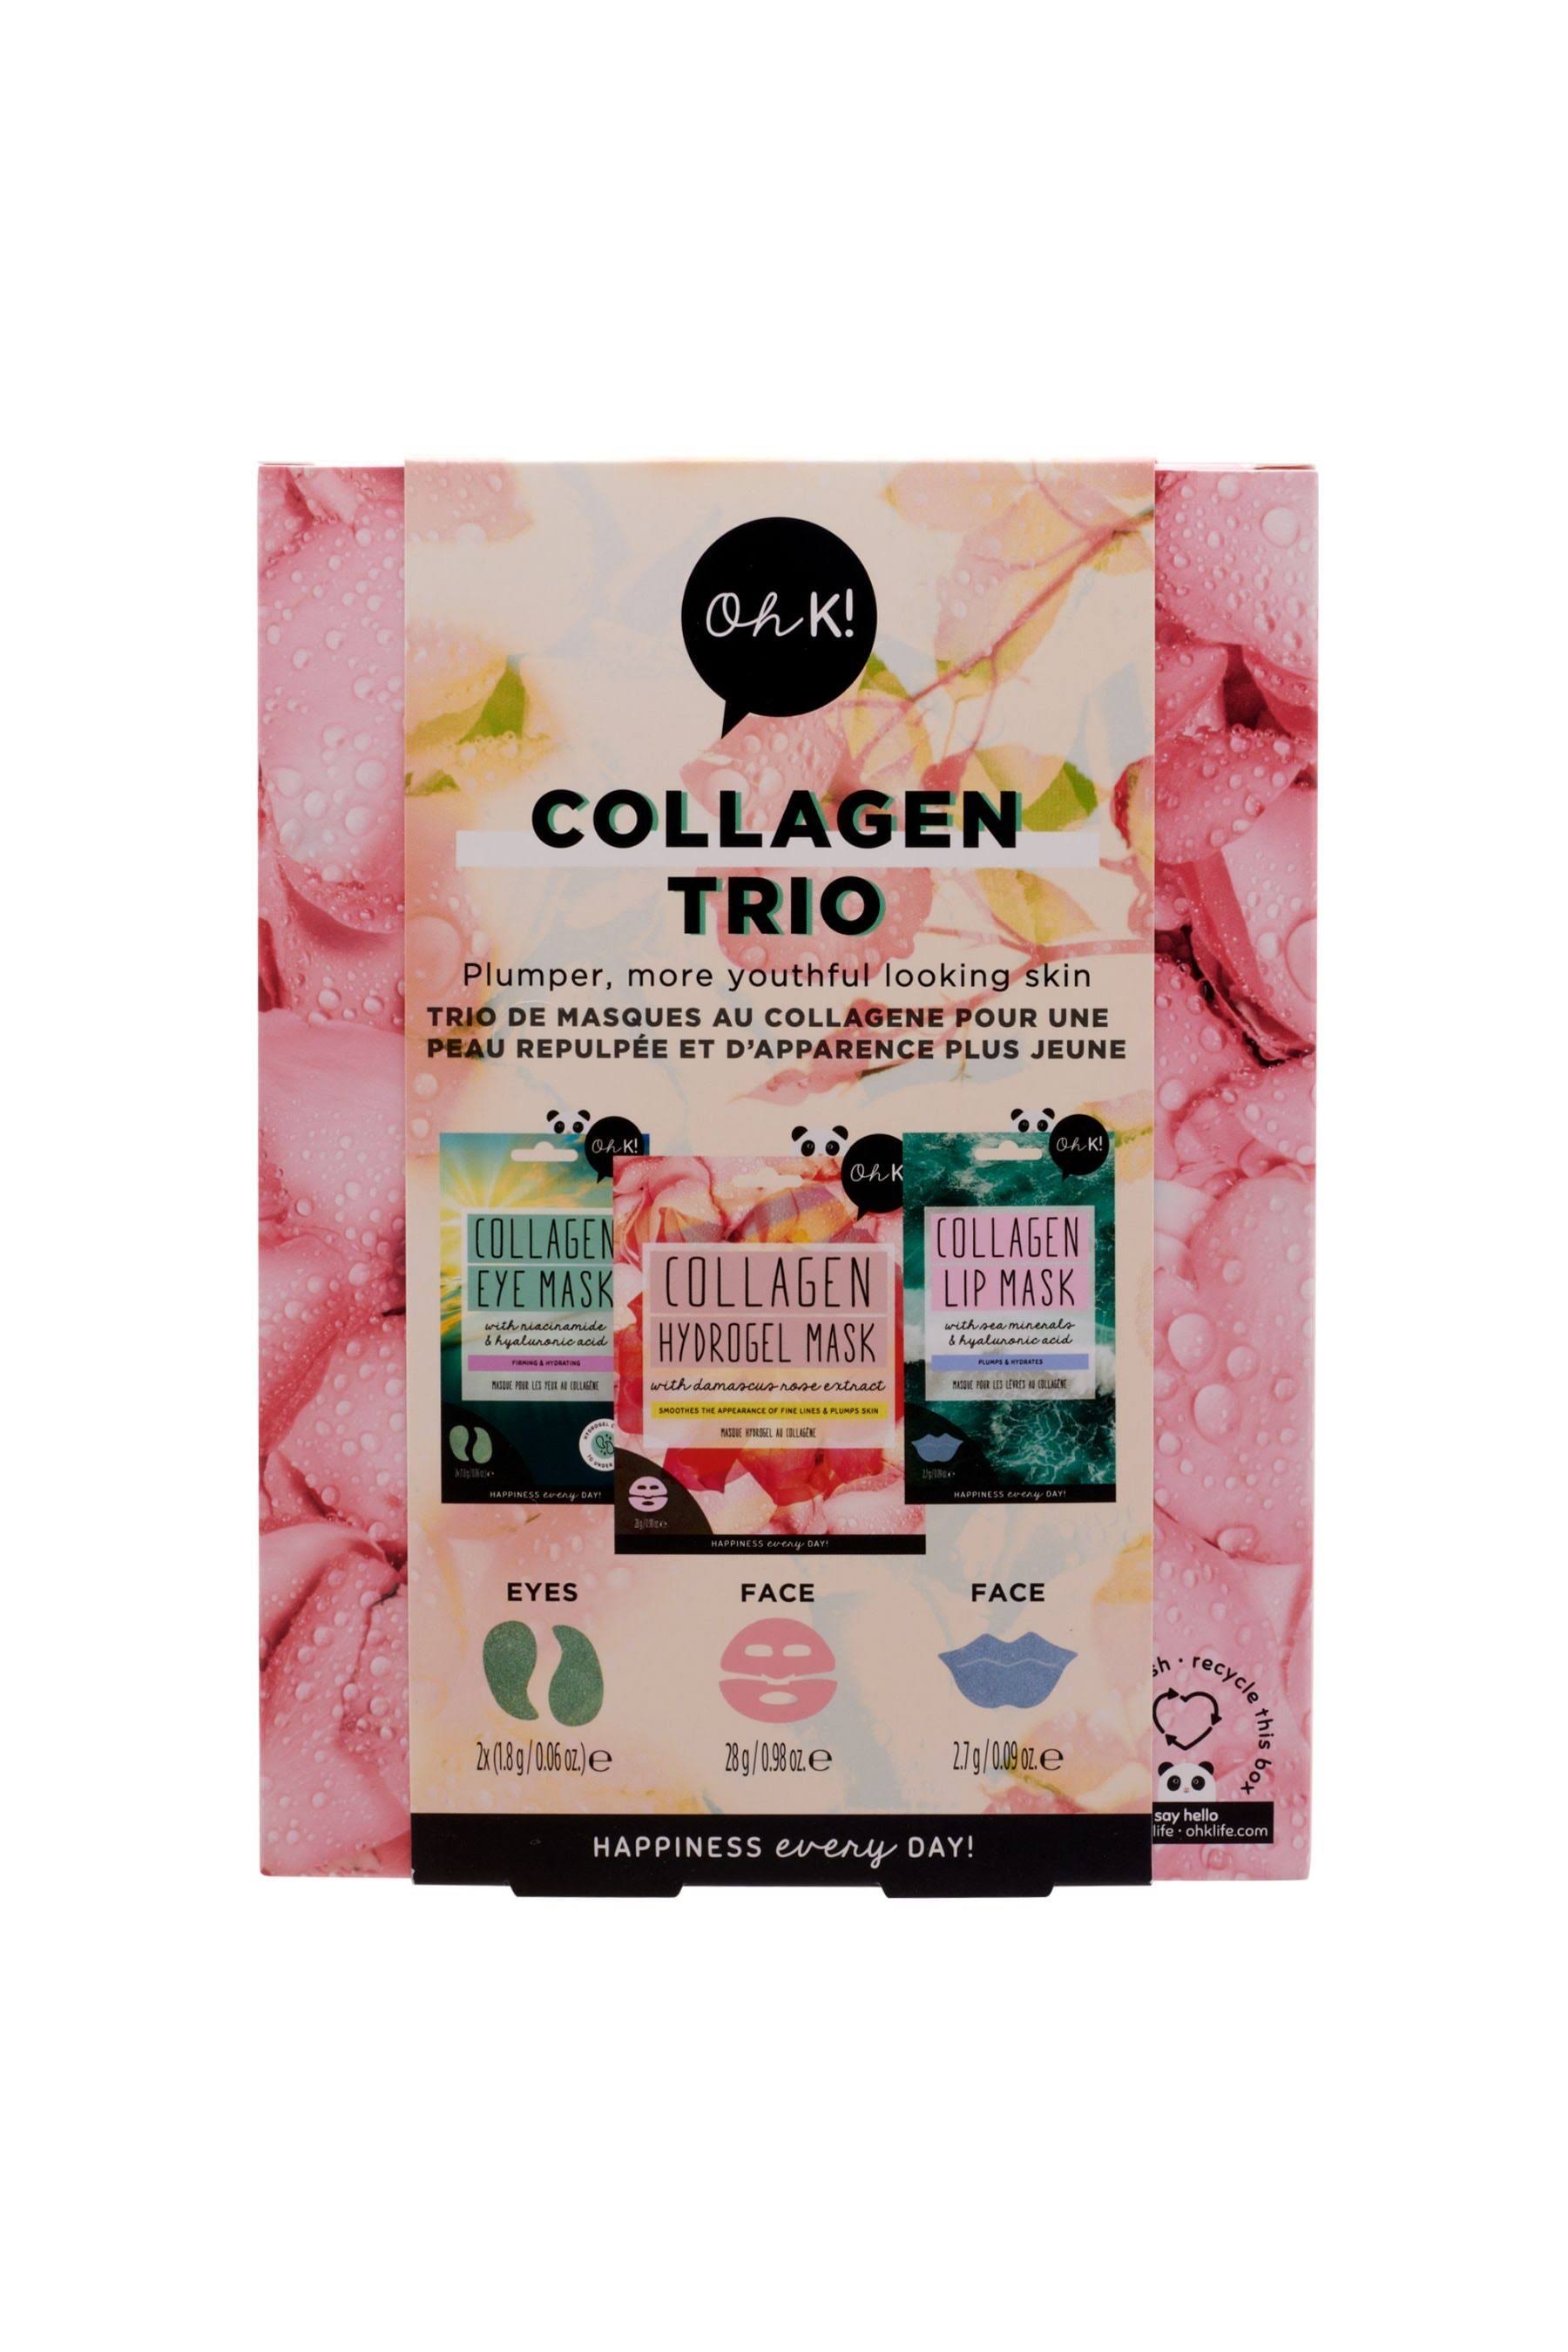 Oh K! Collagen Trio Gift Set